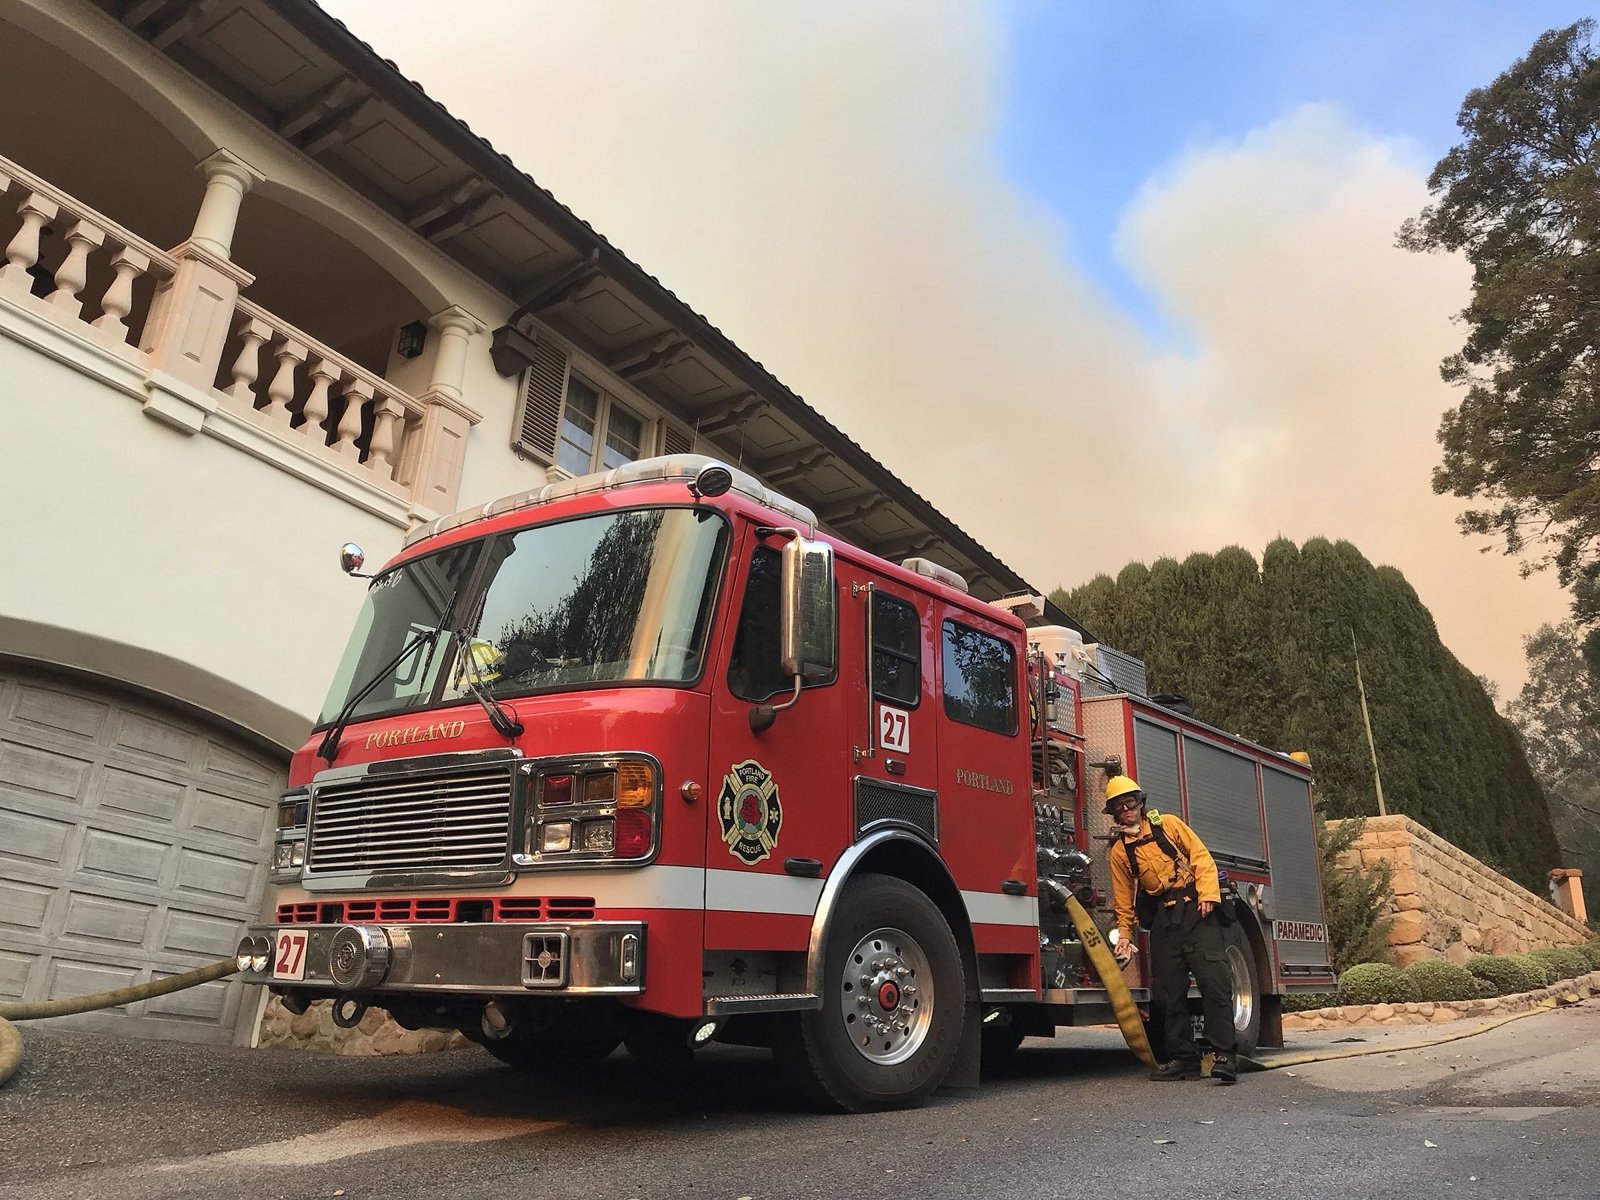 Zdjęcie strażaka przygotowującego się do akcji gaszenia pożarów w Kalifornii.